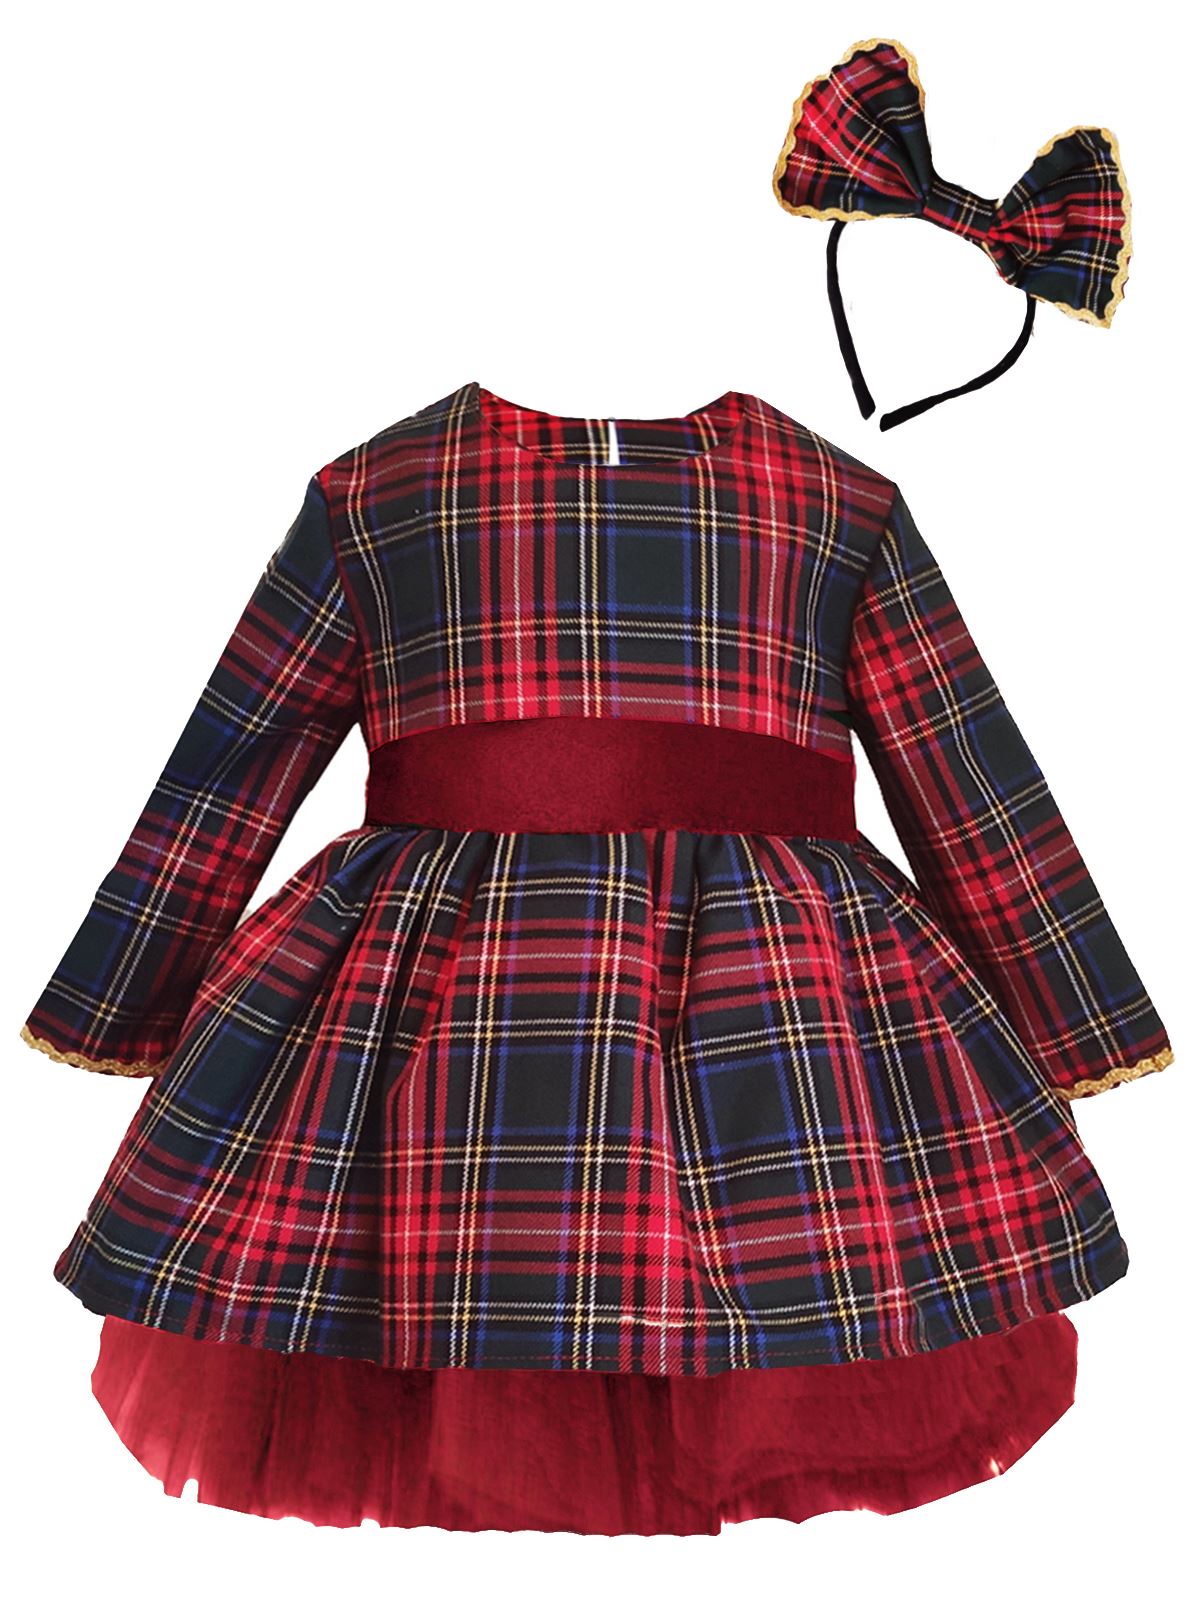 Shecco Babba Kız Çocuk Tütü Elbise Taç Takım Fiyonk 1-5 Yaş Kırmızı